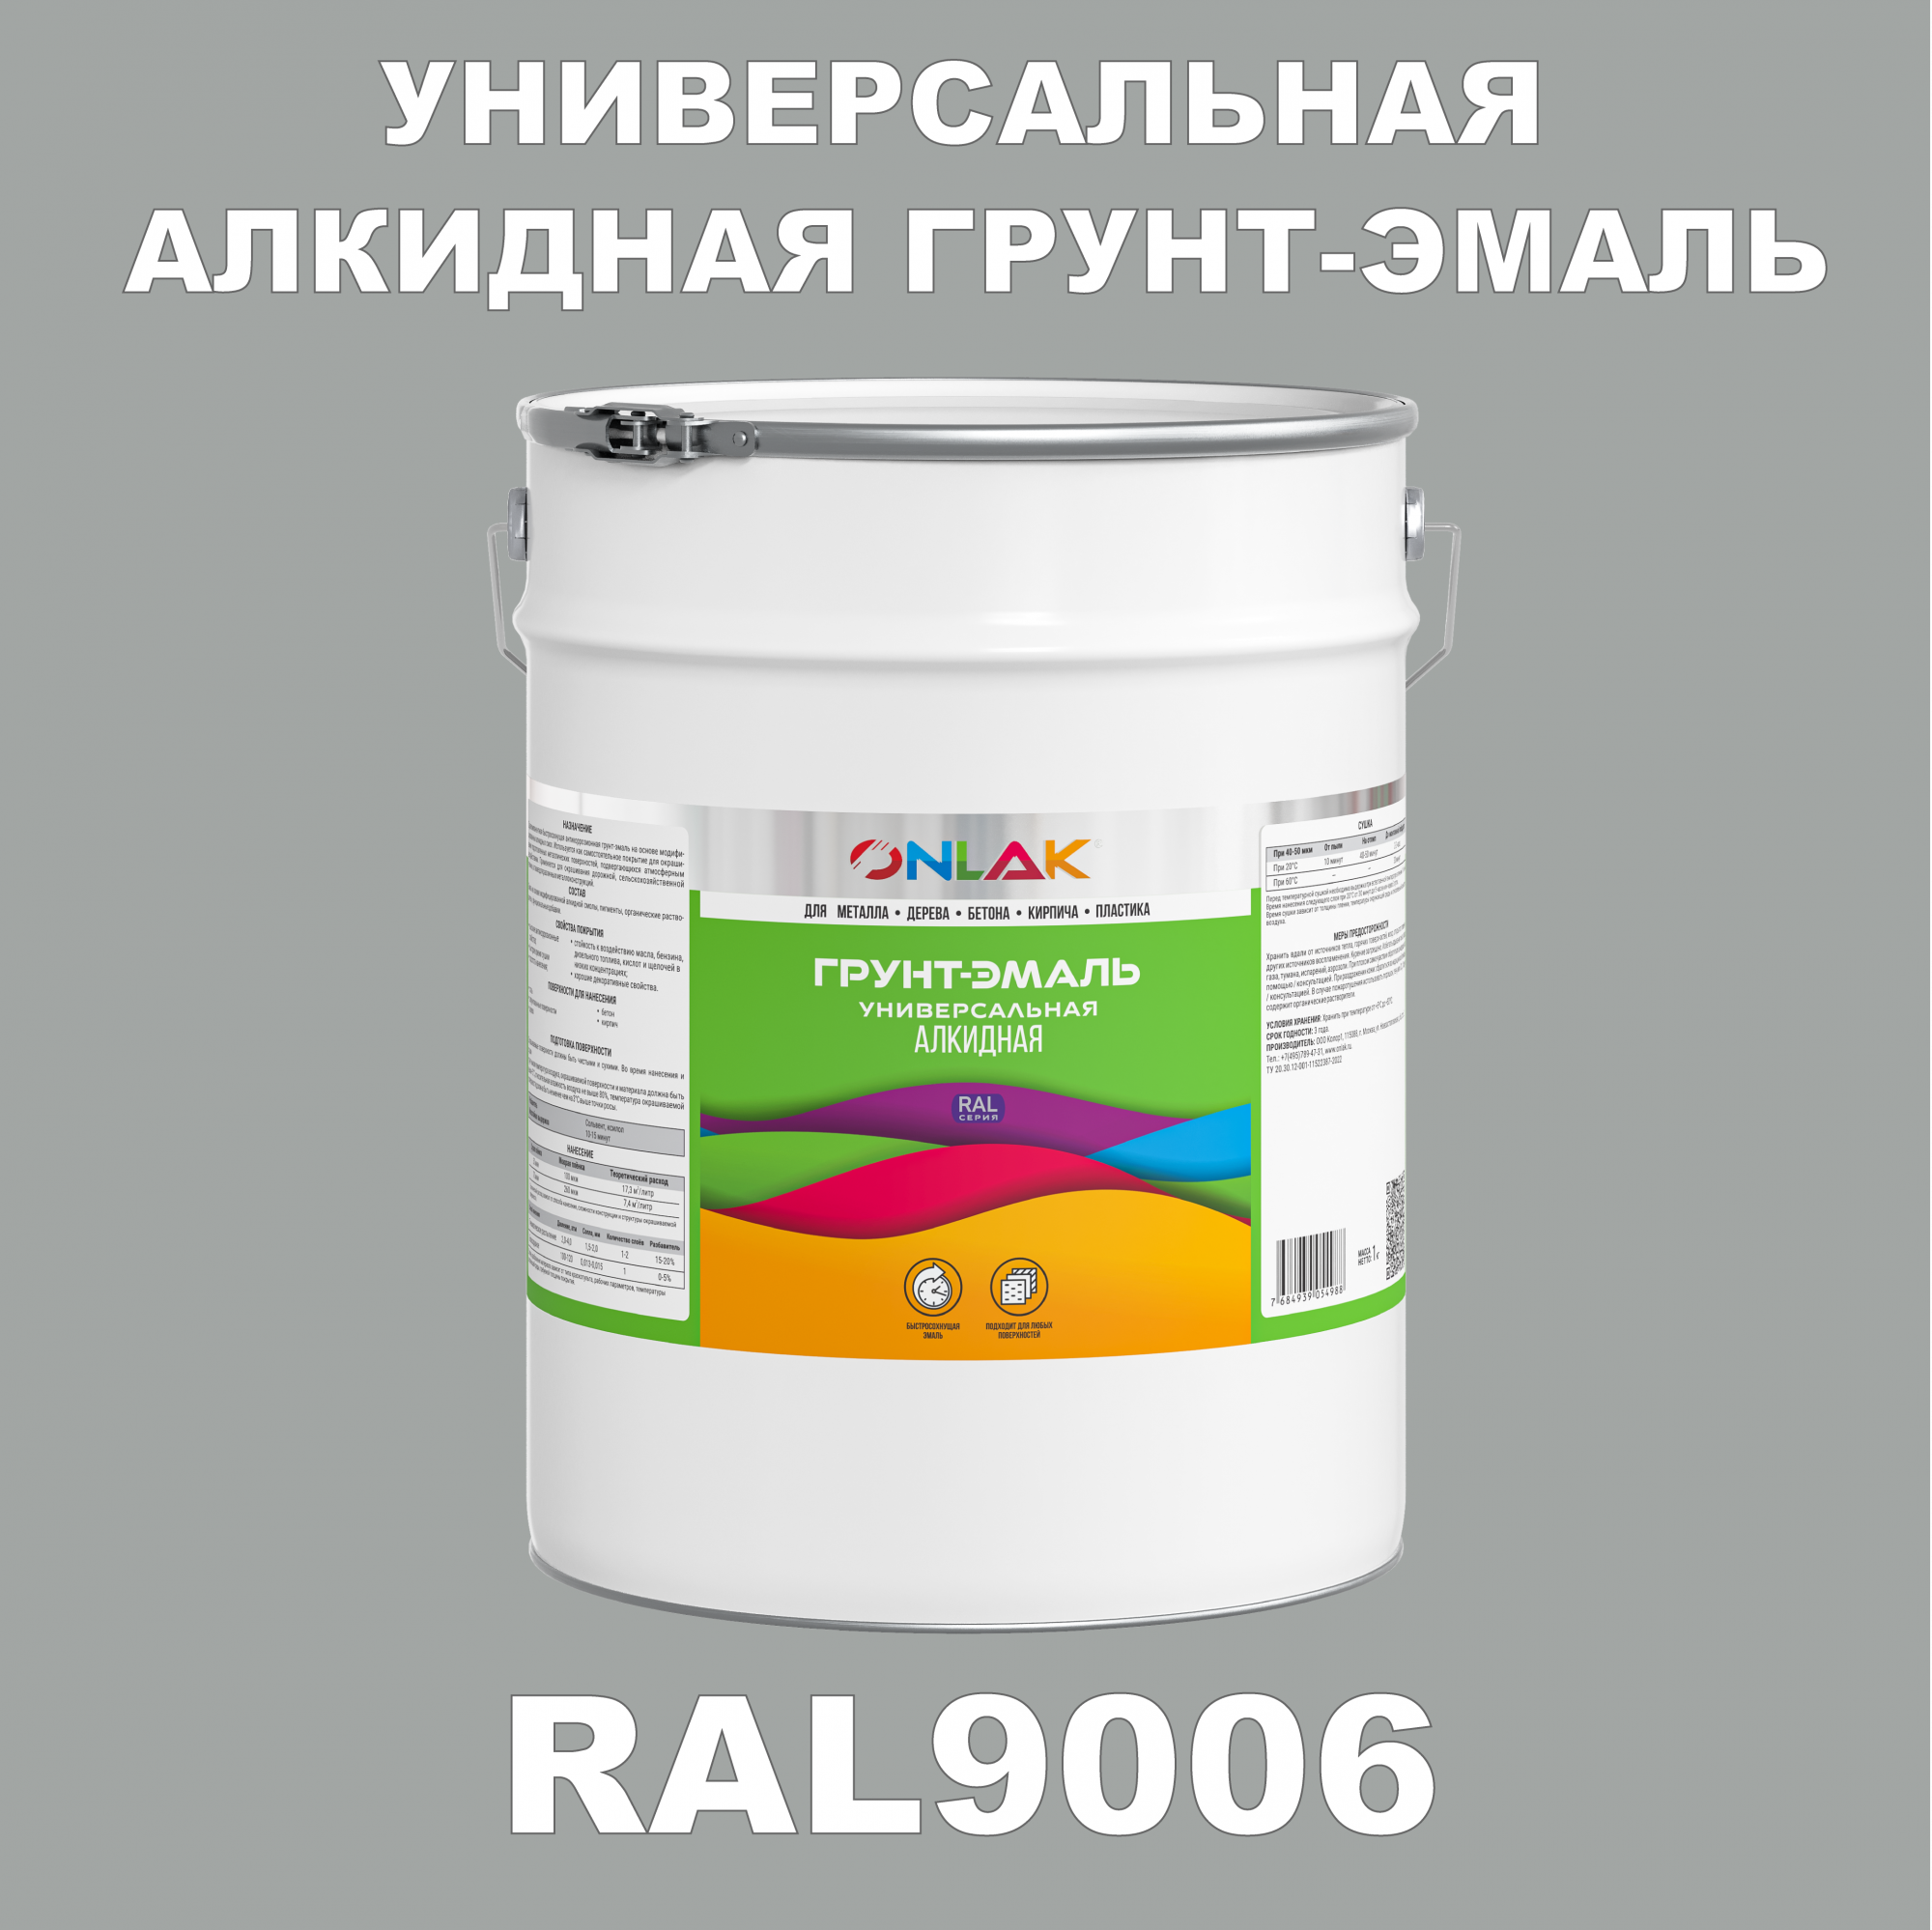 Грунт-эмаль ONLAK 1К RAL9006 антикоррозионная алкидная по металлу по ржавчине 20 кг грунт эмаль skladno по ржавчине алкидная желтая 1 8 кг